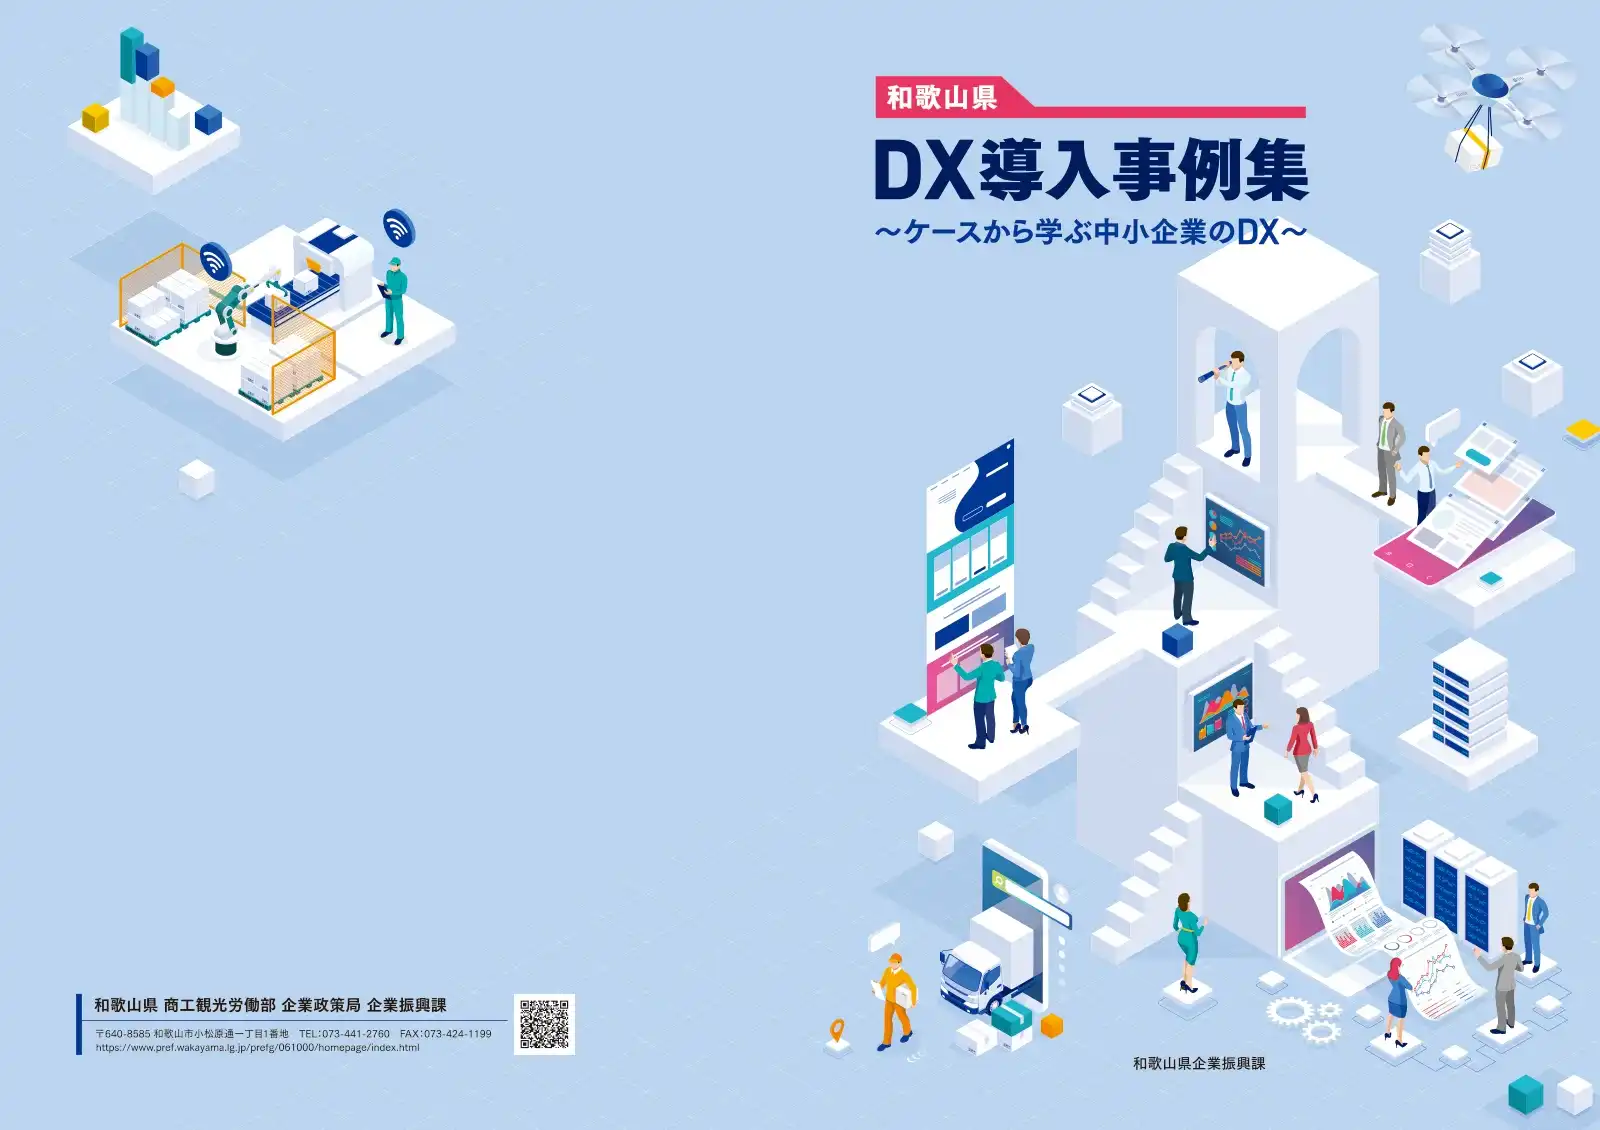 和歌山県DX導入事例集の表紙まわり